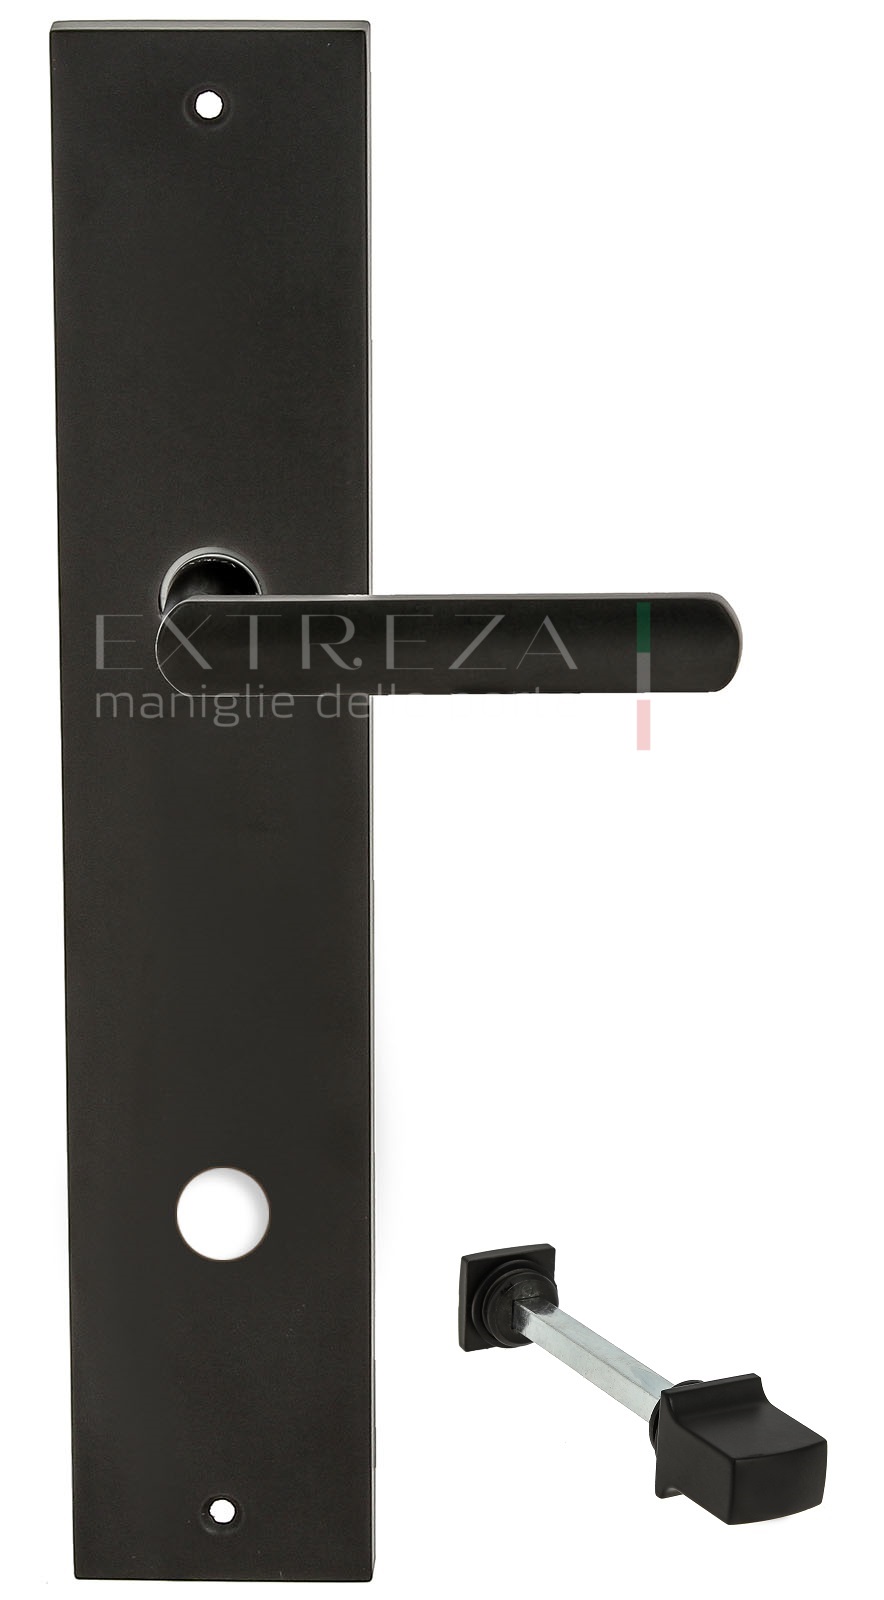 Ручка дверная Extreza Hi-Tech AQUA (Аква) 113 на планке PL11 WC черный F22